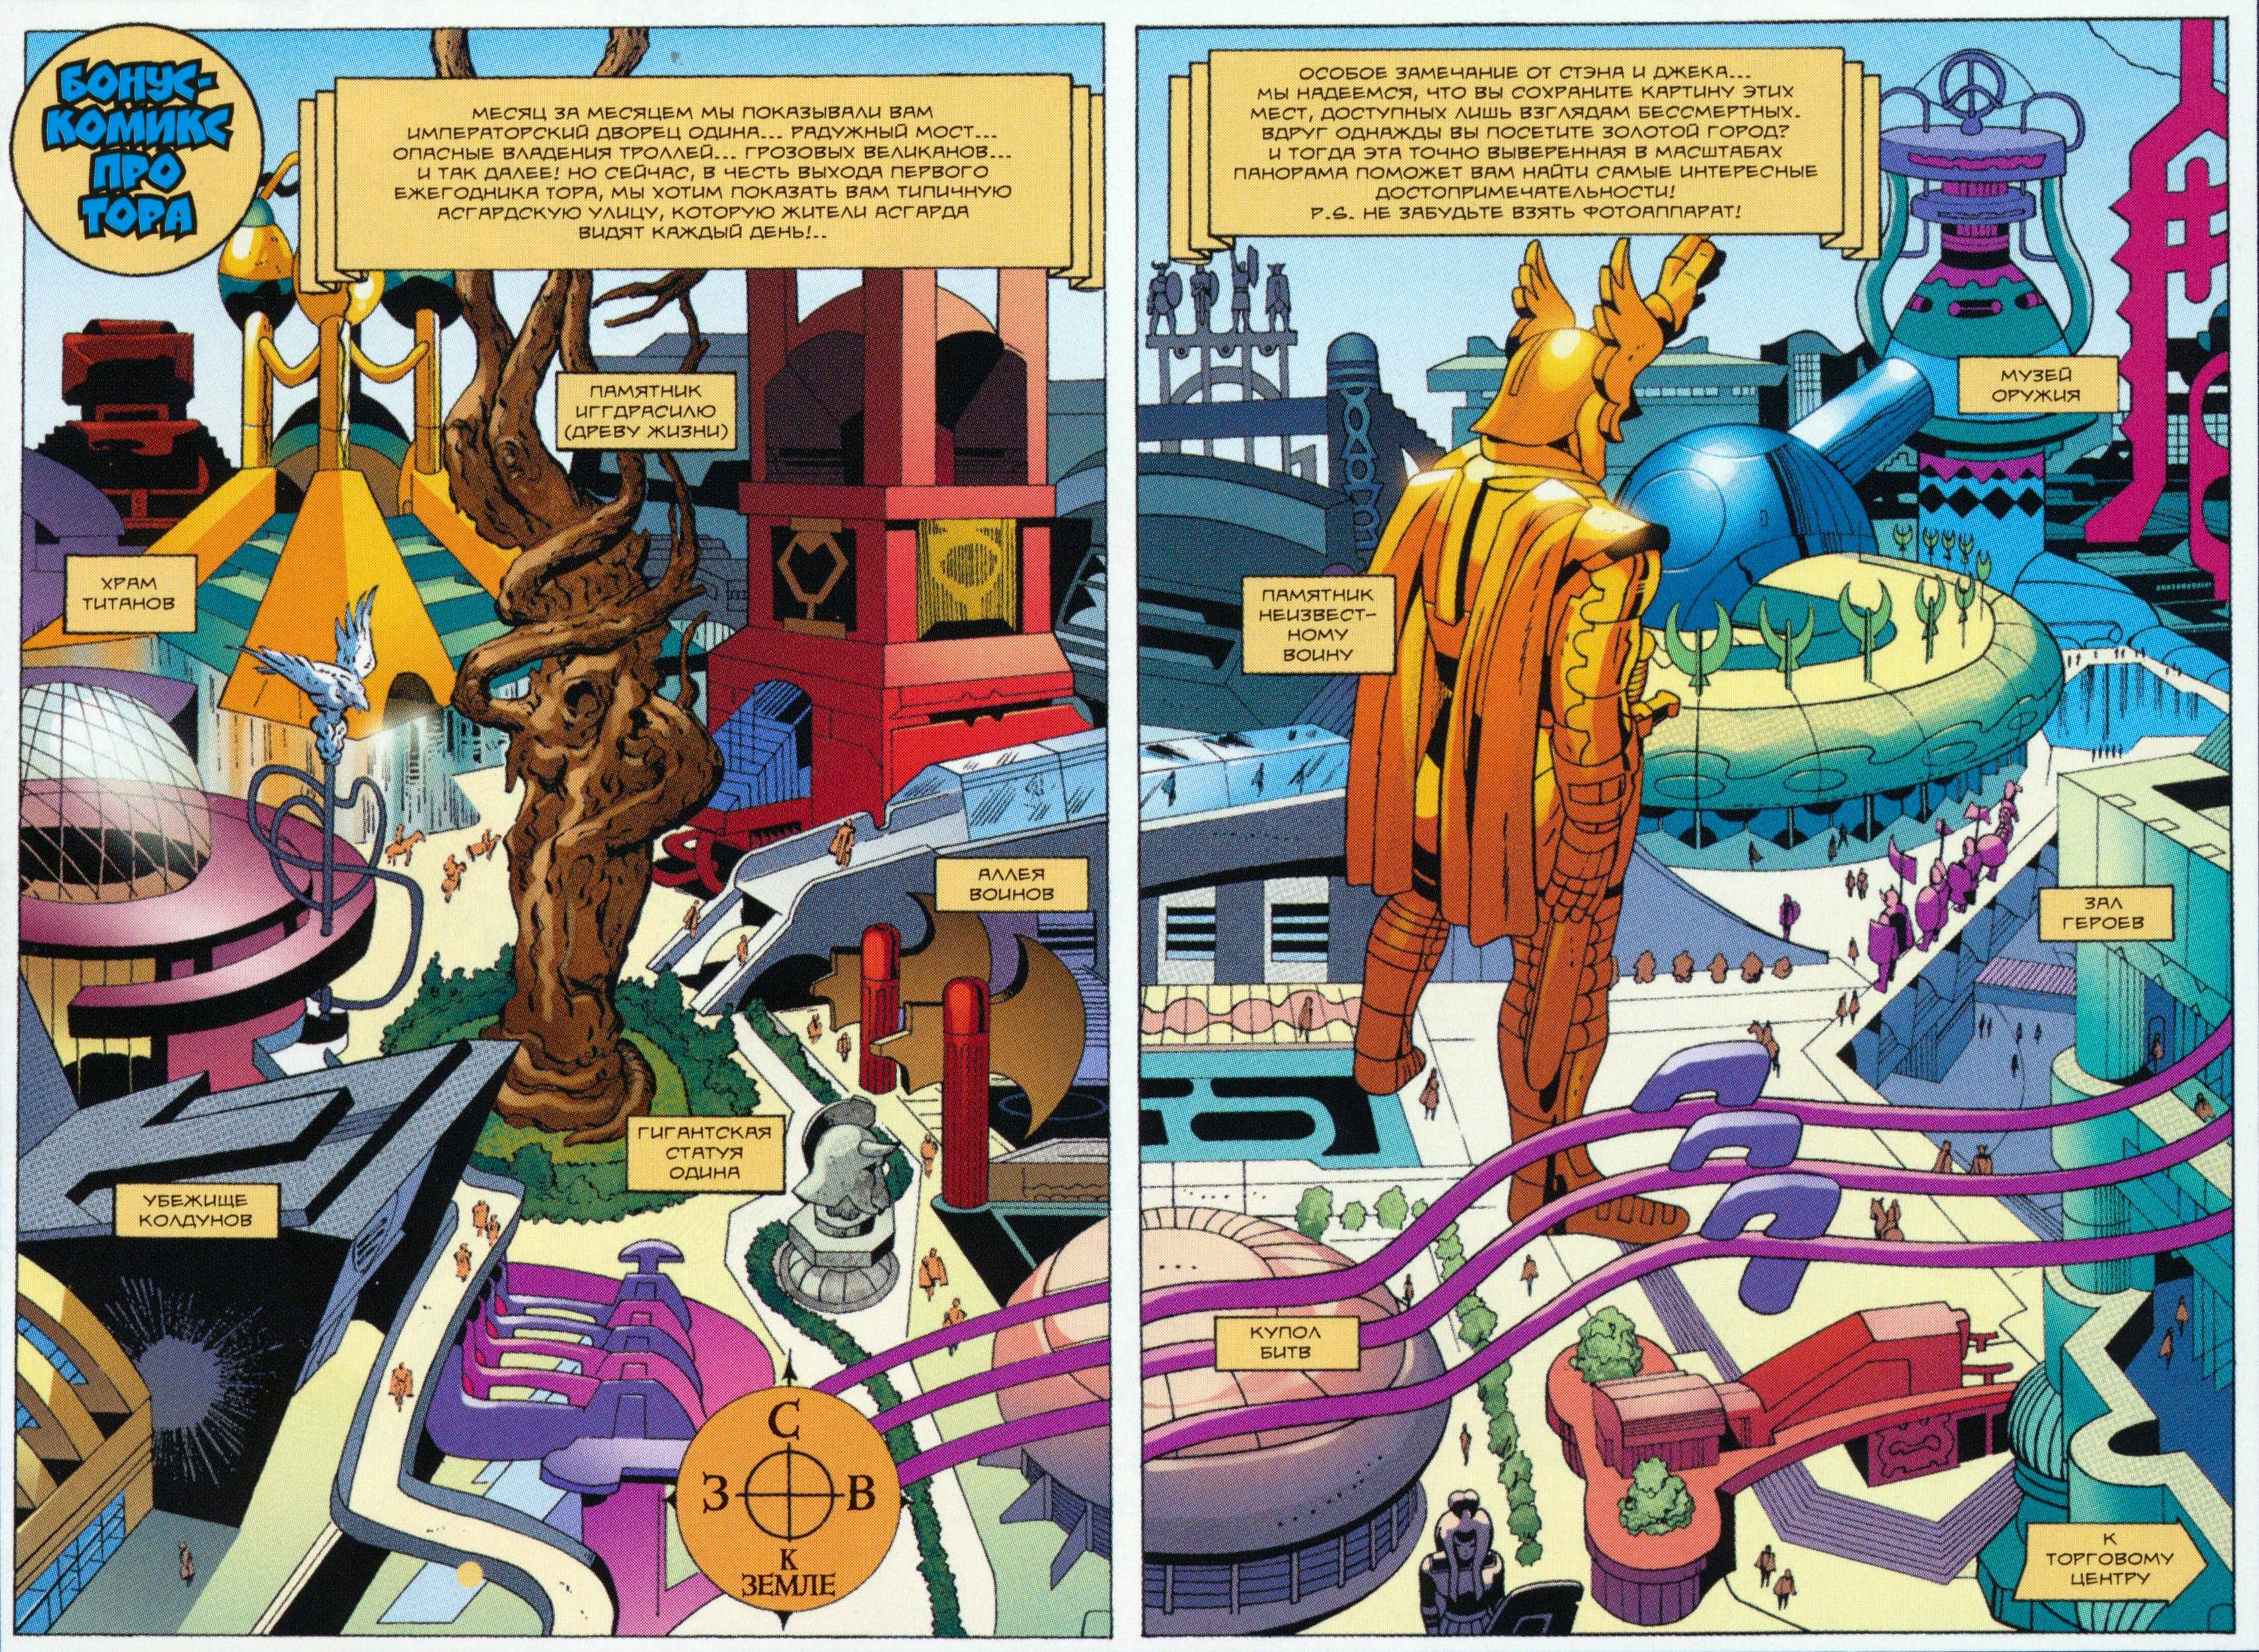 Тор: Сказания Асгарда от Стэна Ли и Джека Кирби №3 онлайн